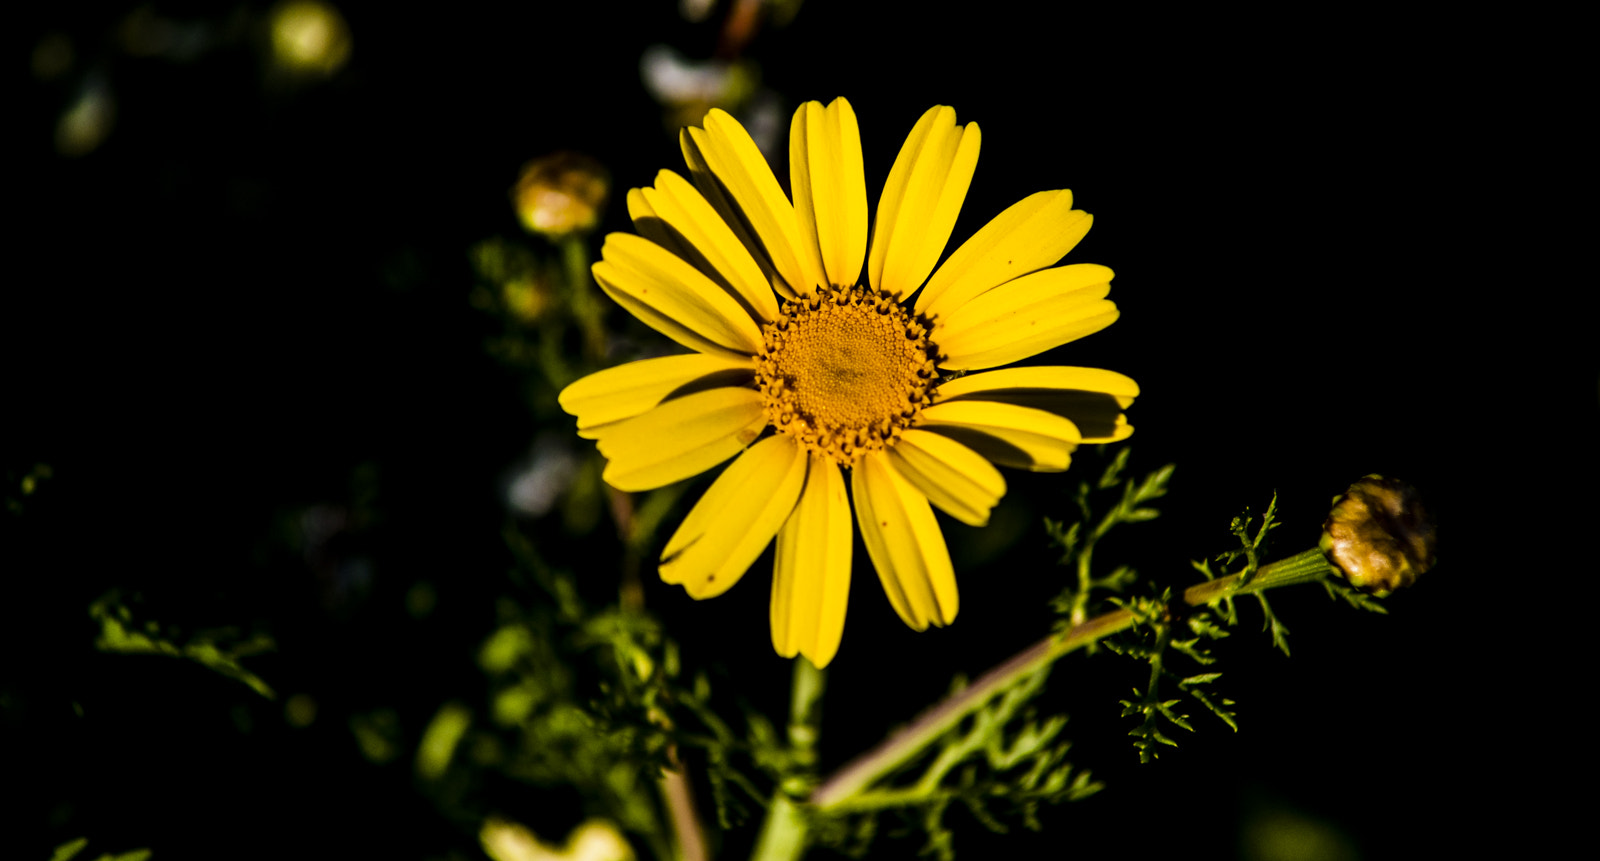 AF Zoom-Nikkor 70-210mm f/4 sample photo. Flower photography